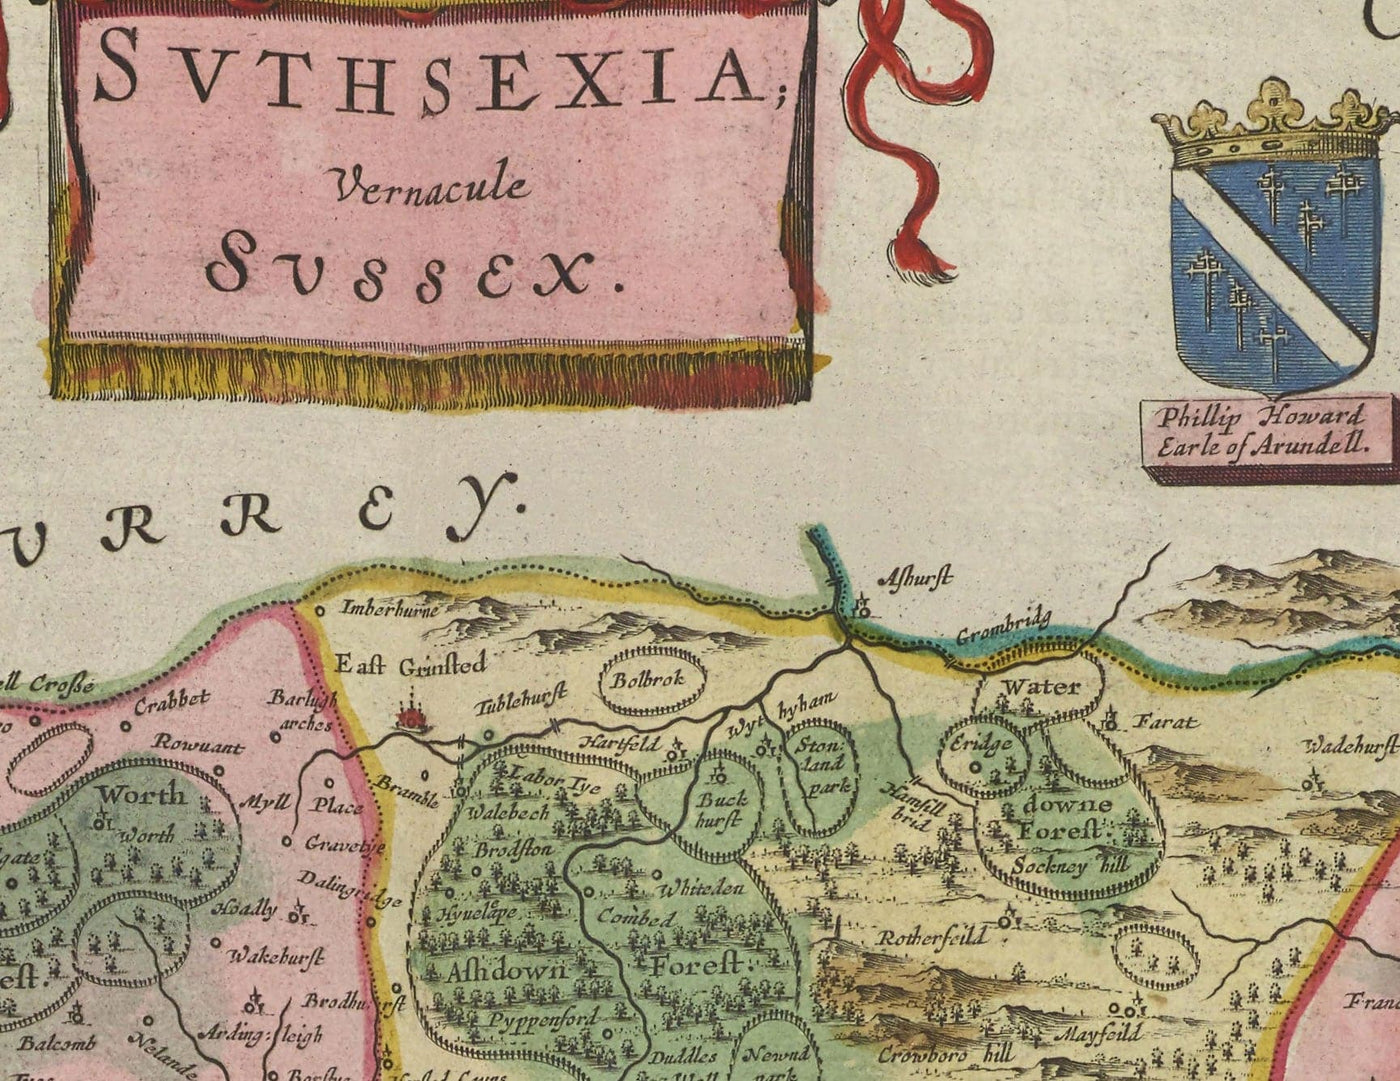 Alte Karte von Sussex 1665 von Joan Blaeu - East, West, Mid Sussex, Worthing, Crawley, Brighton, Bognor, Eastbourne